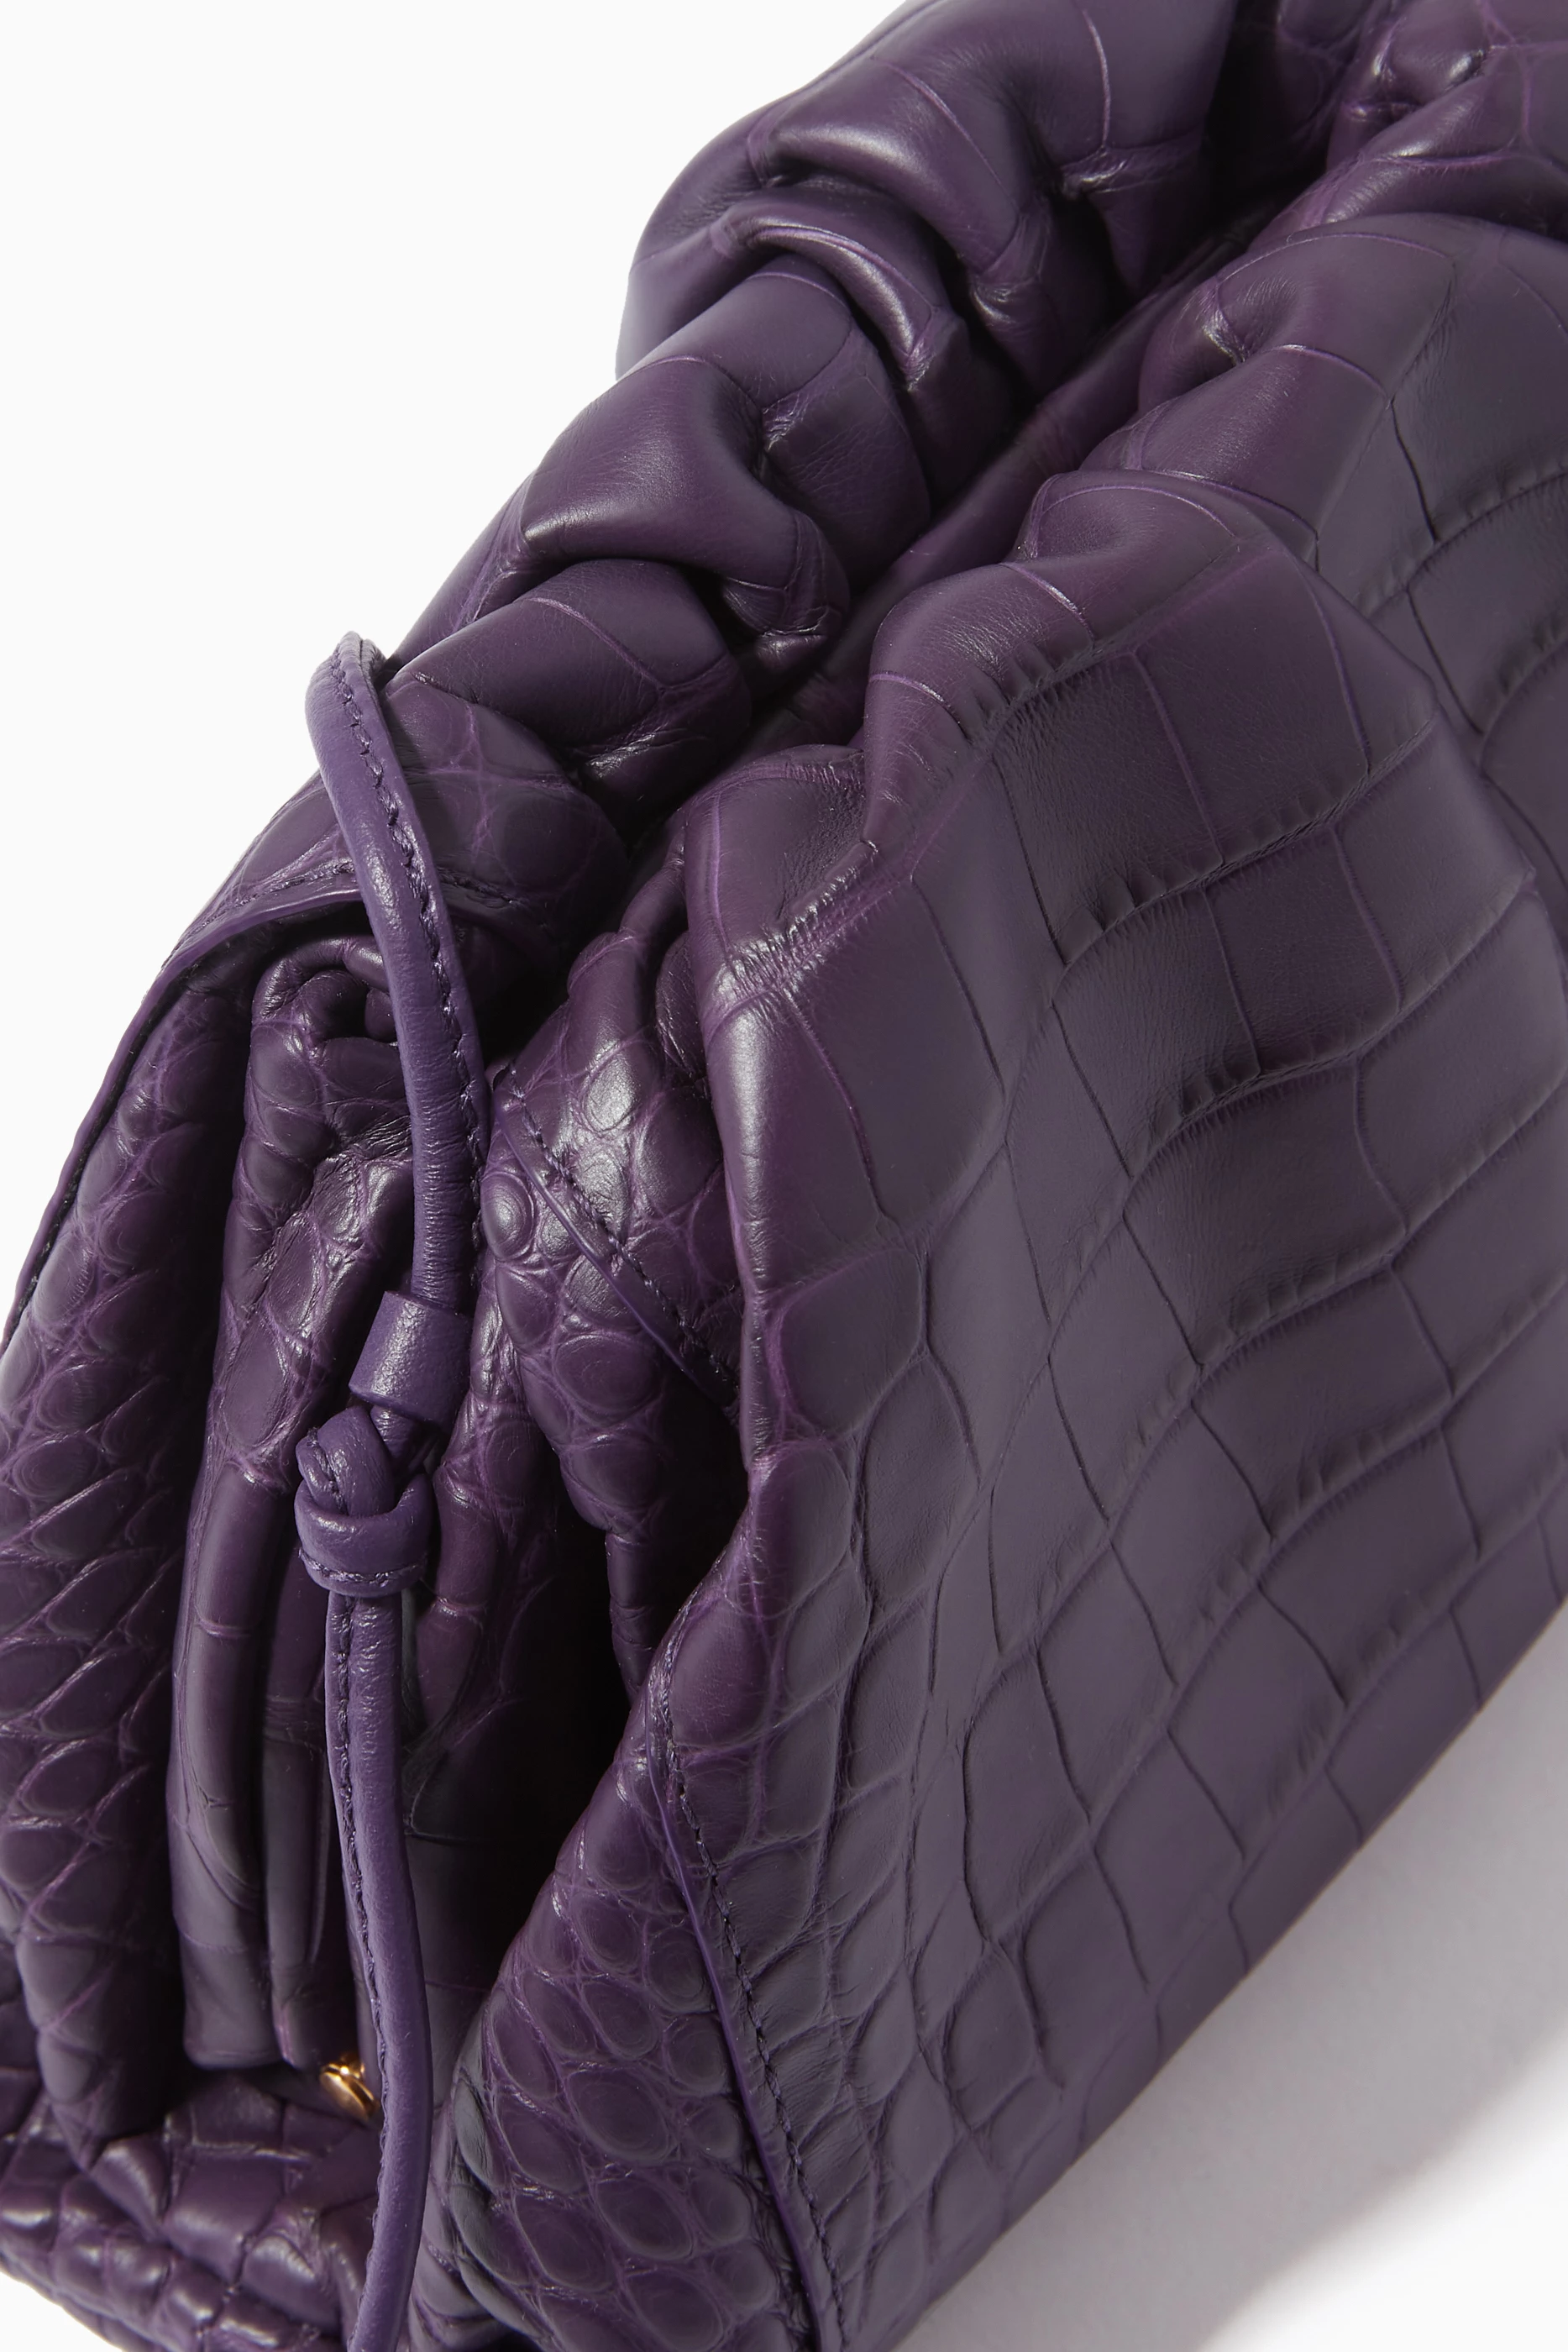 Purple Bottega Veneta Intrecciato The Mini Pouch Crossoutdoor Bag